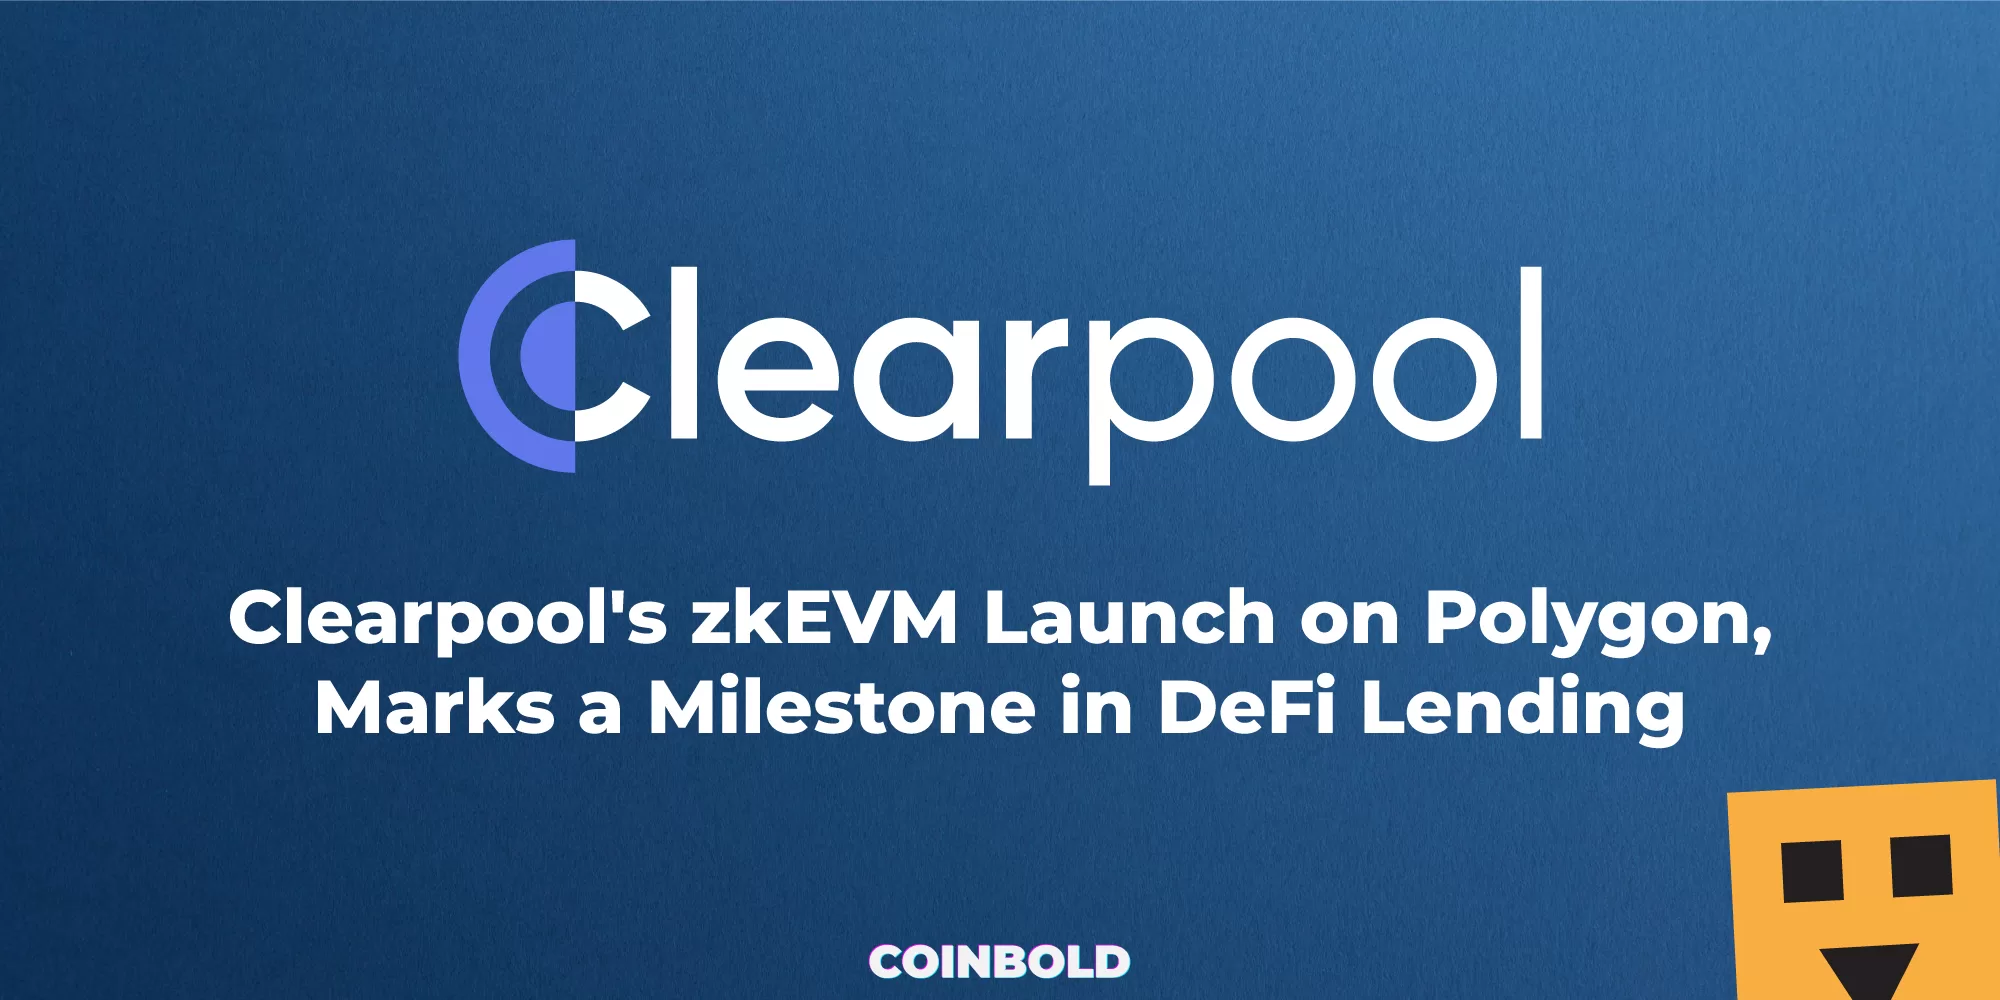 Clearpool's zkEVM Launch on Polygon, Marks a Milestone in DeFi Lending